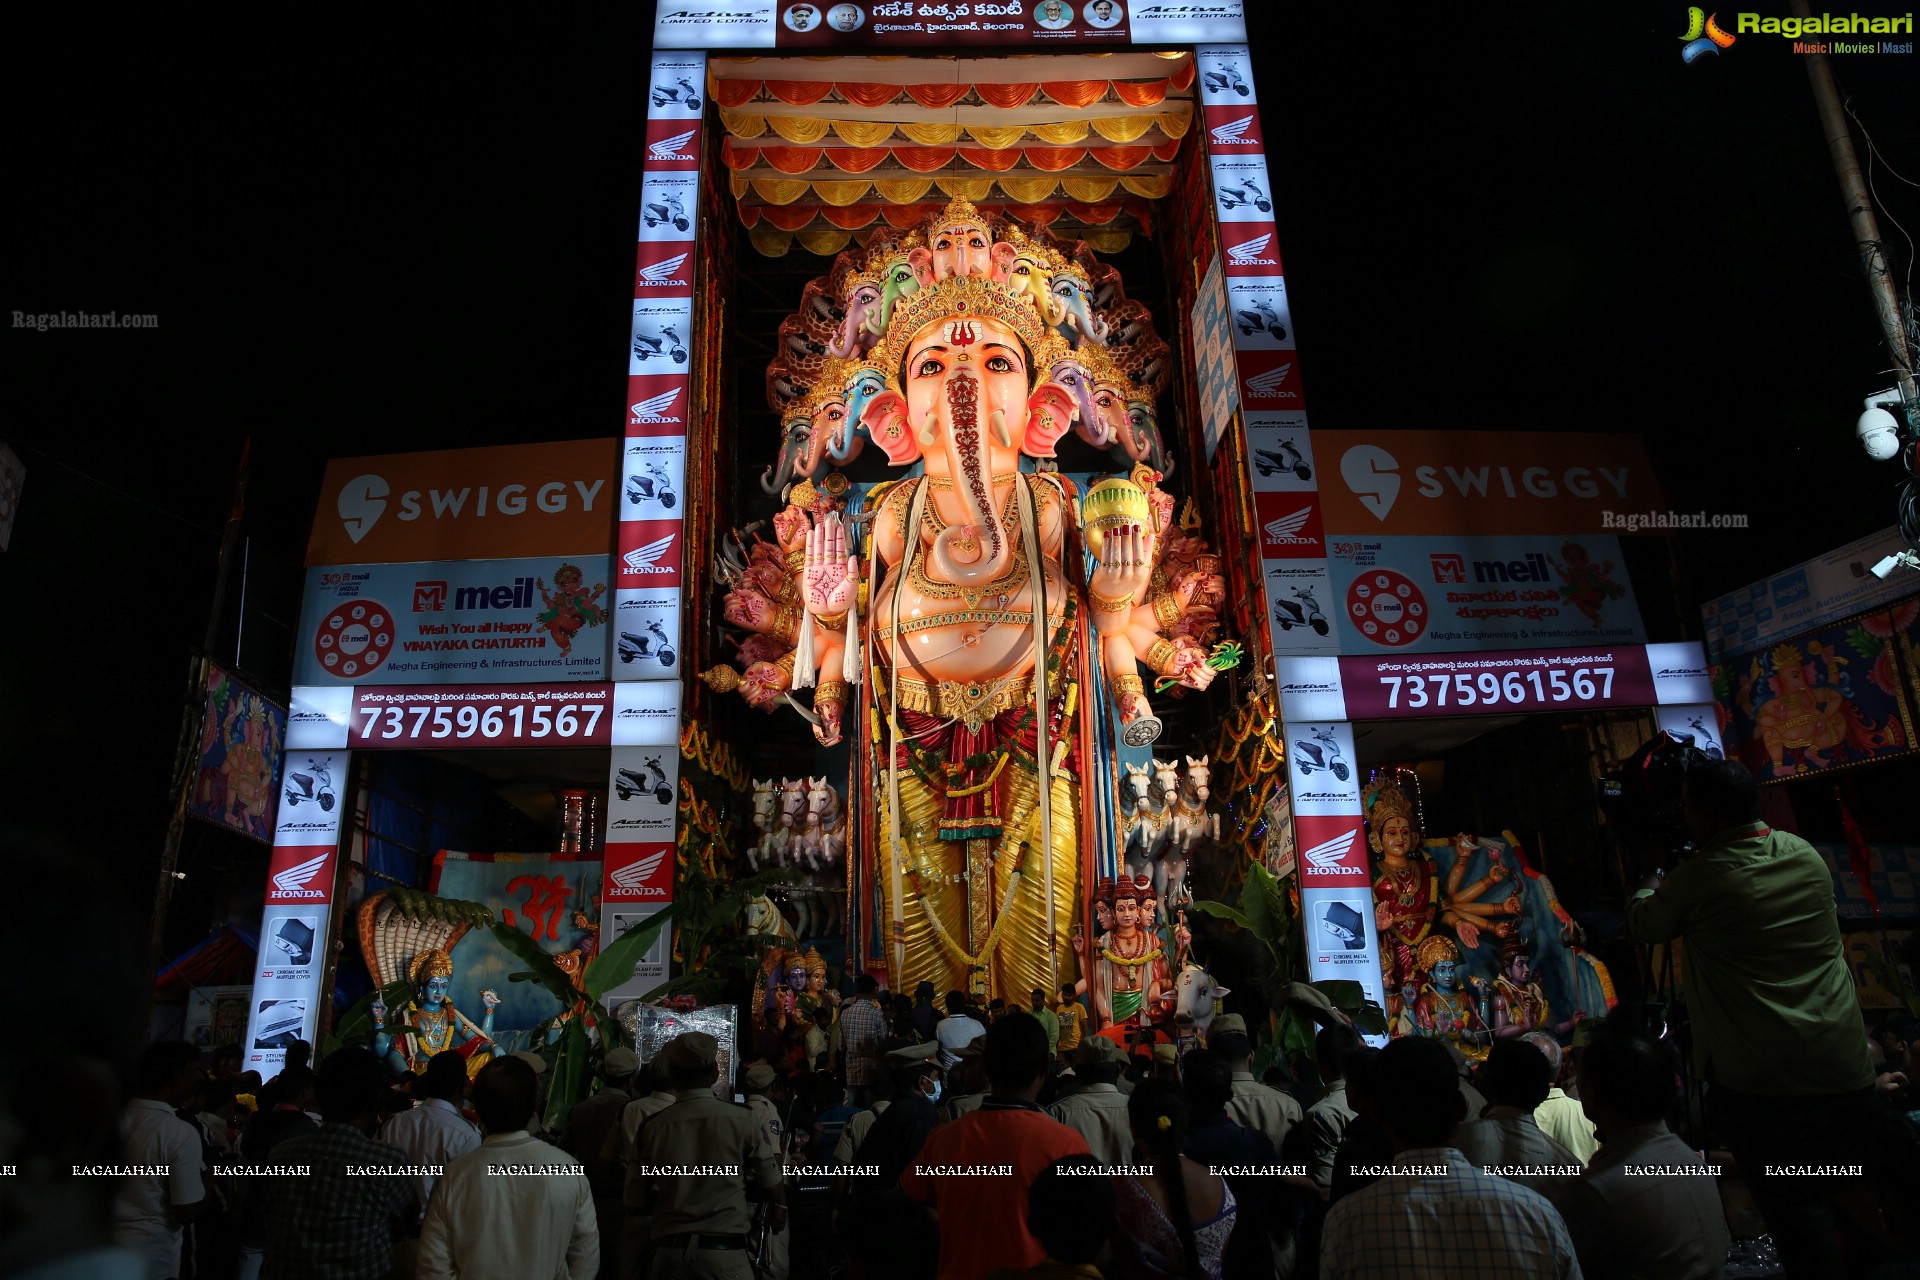 Ganesh Chaturthi 2019 Celebrations at Khairatabad